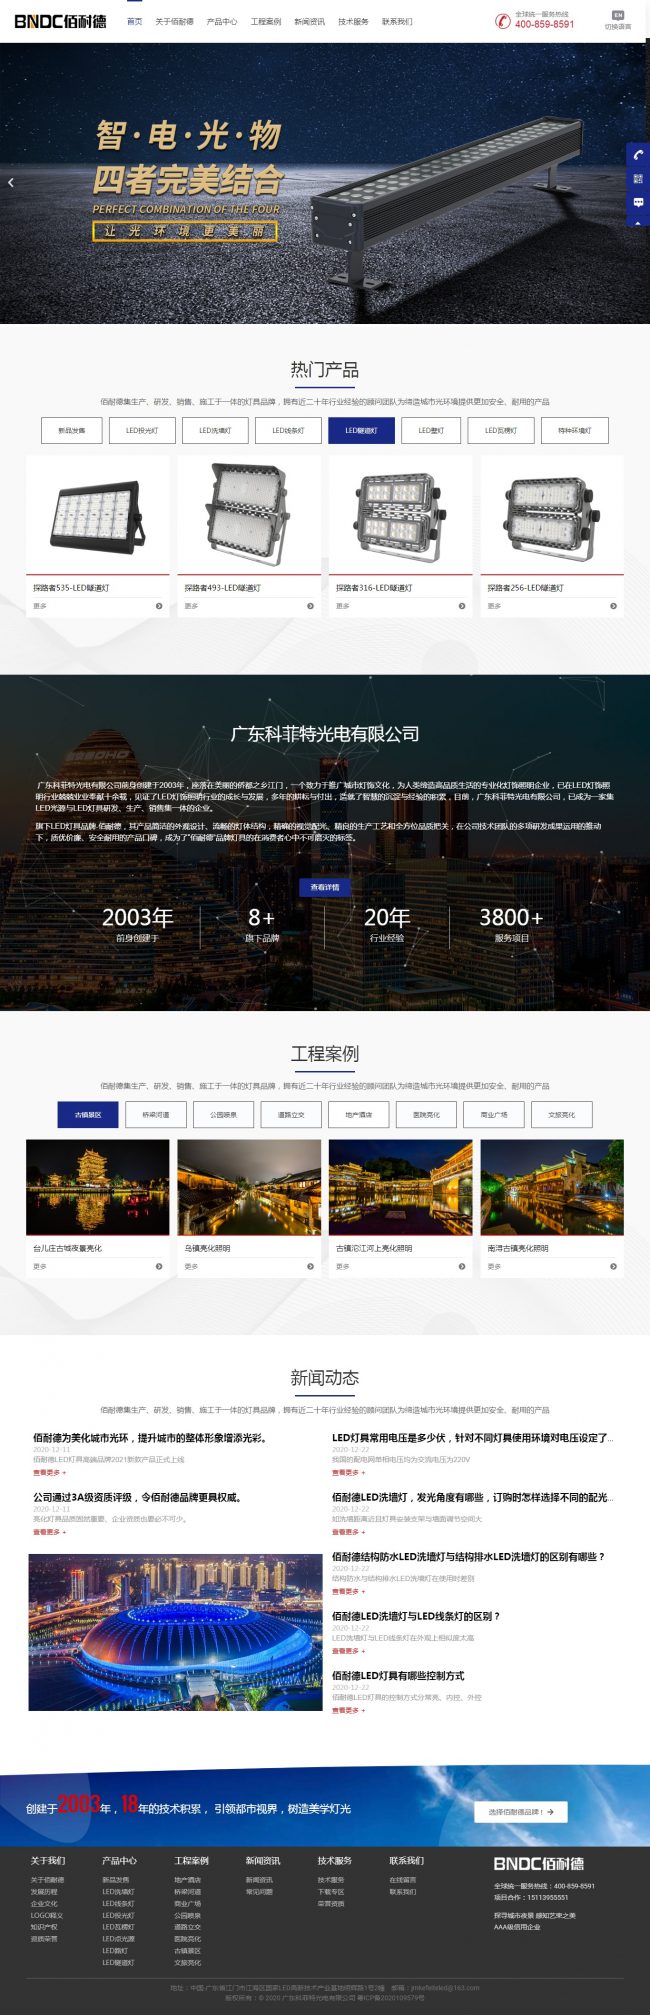 上海双创投资中心 网站建设报价方案